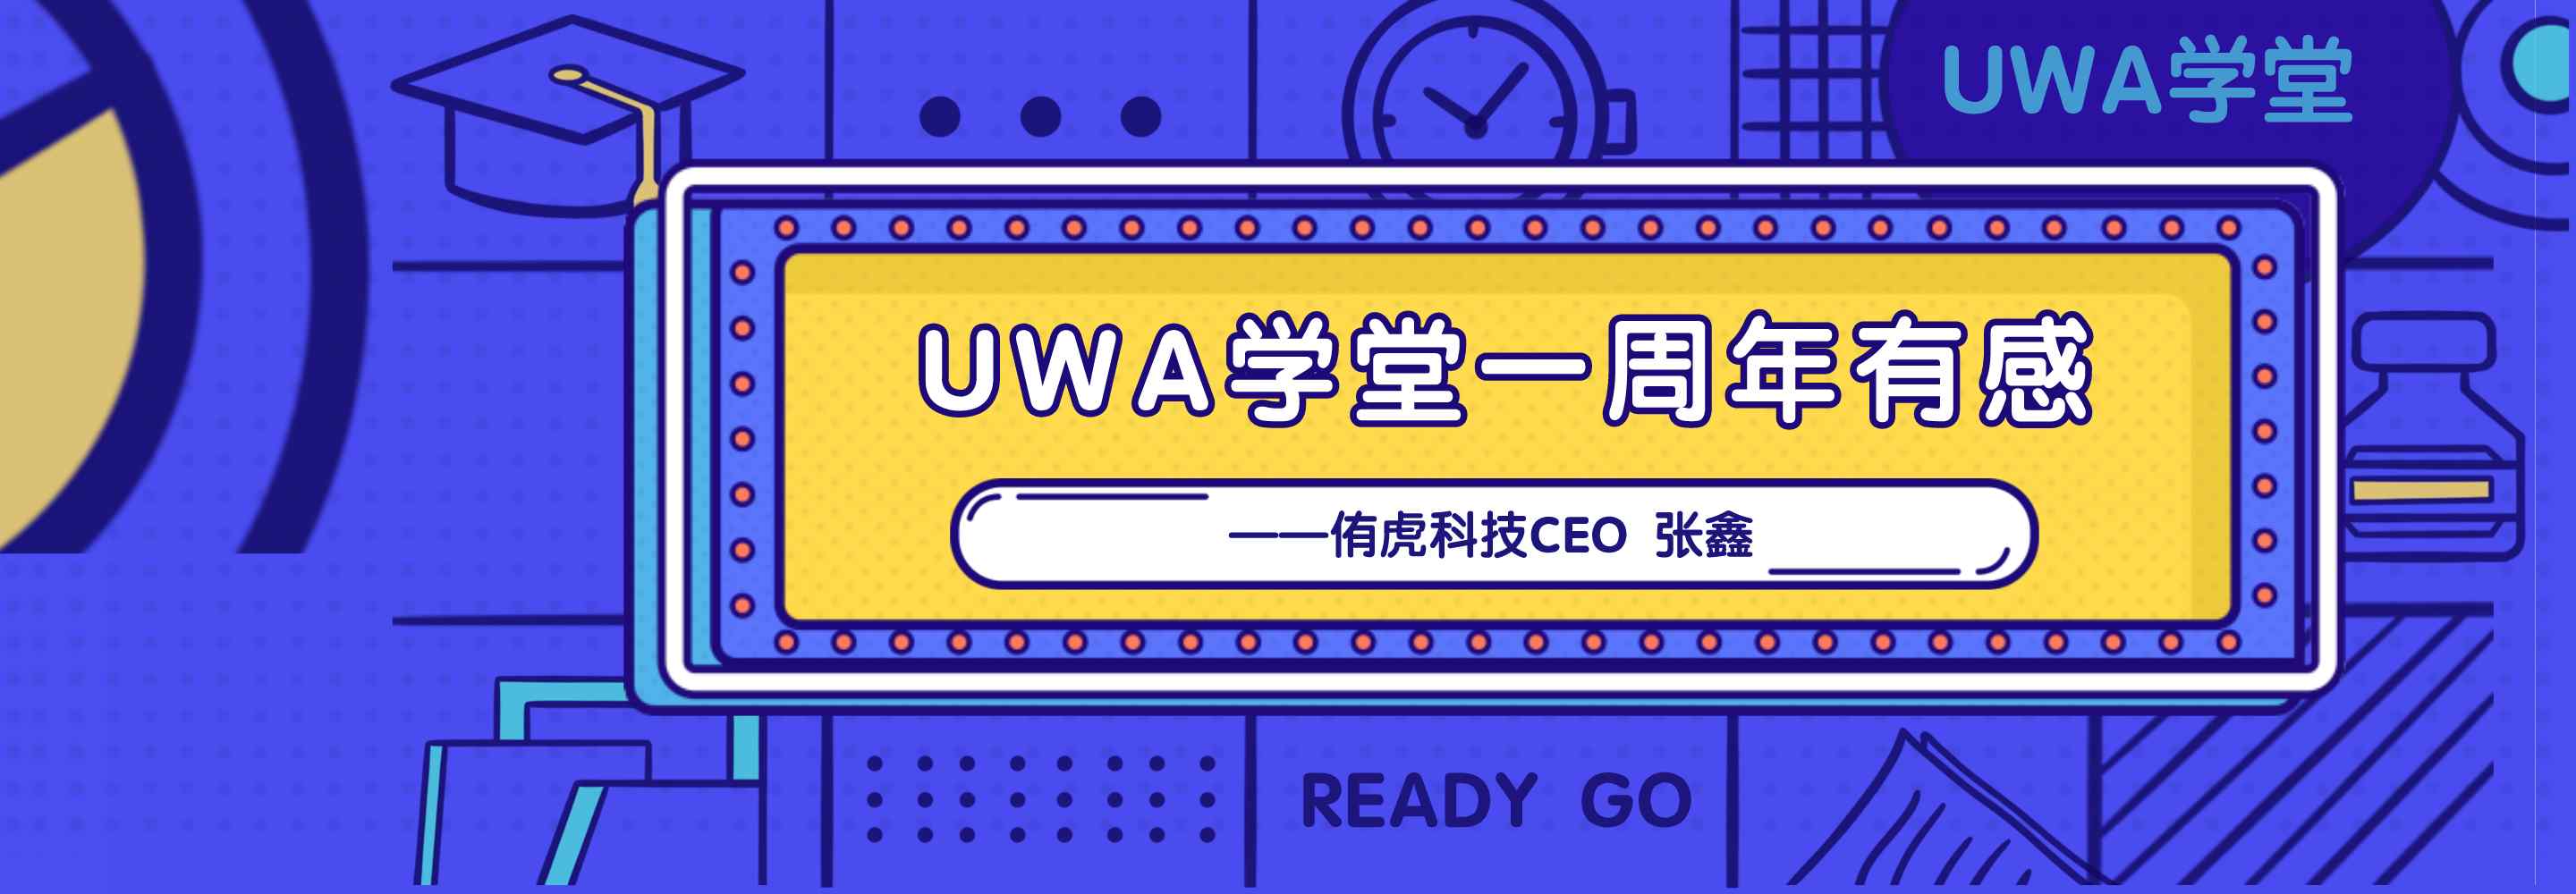 UWA 学堂成立一周年有感